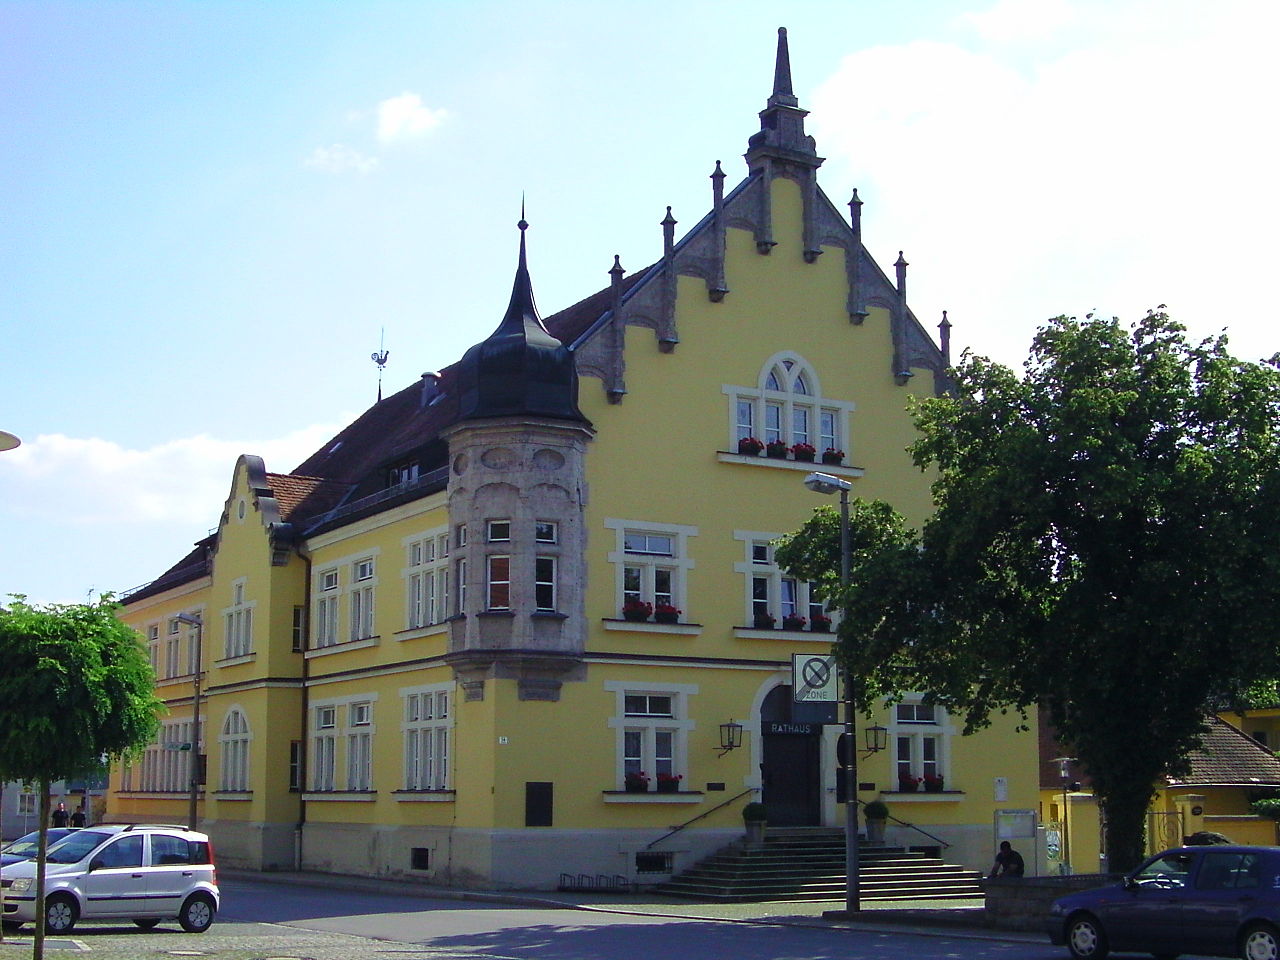 Bogen Rathaus